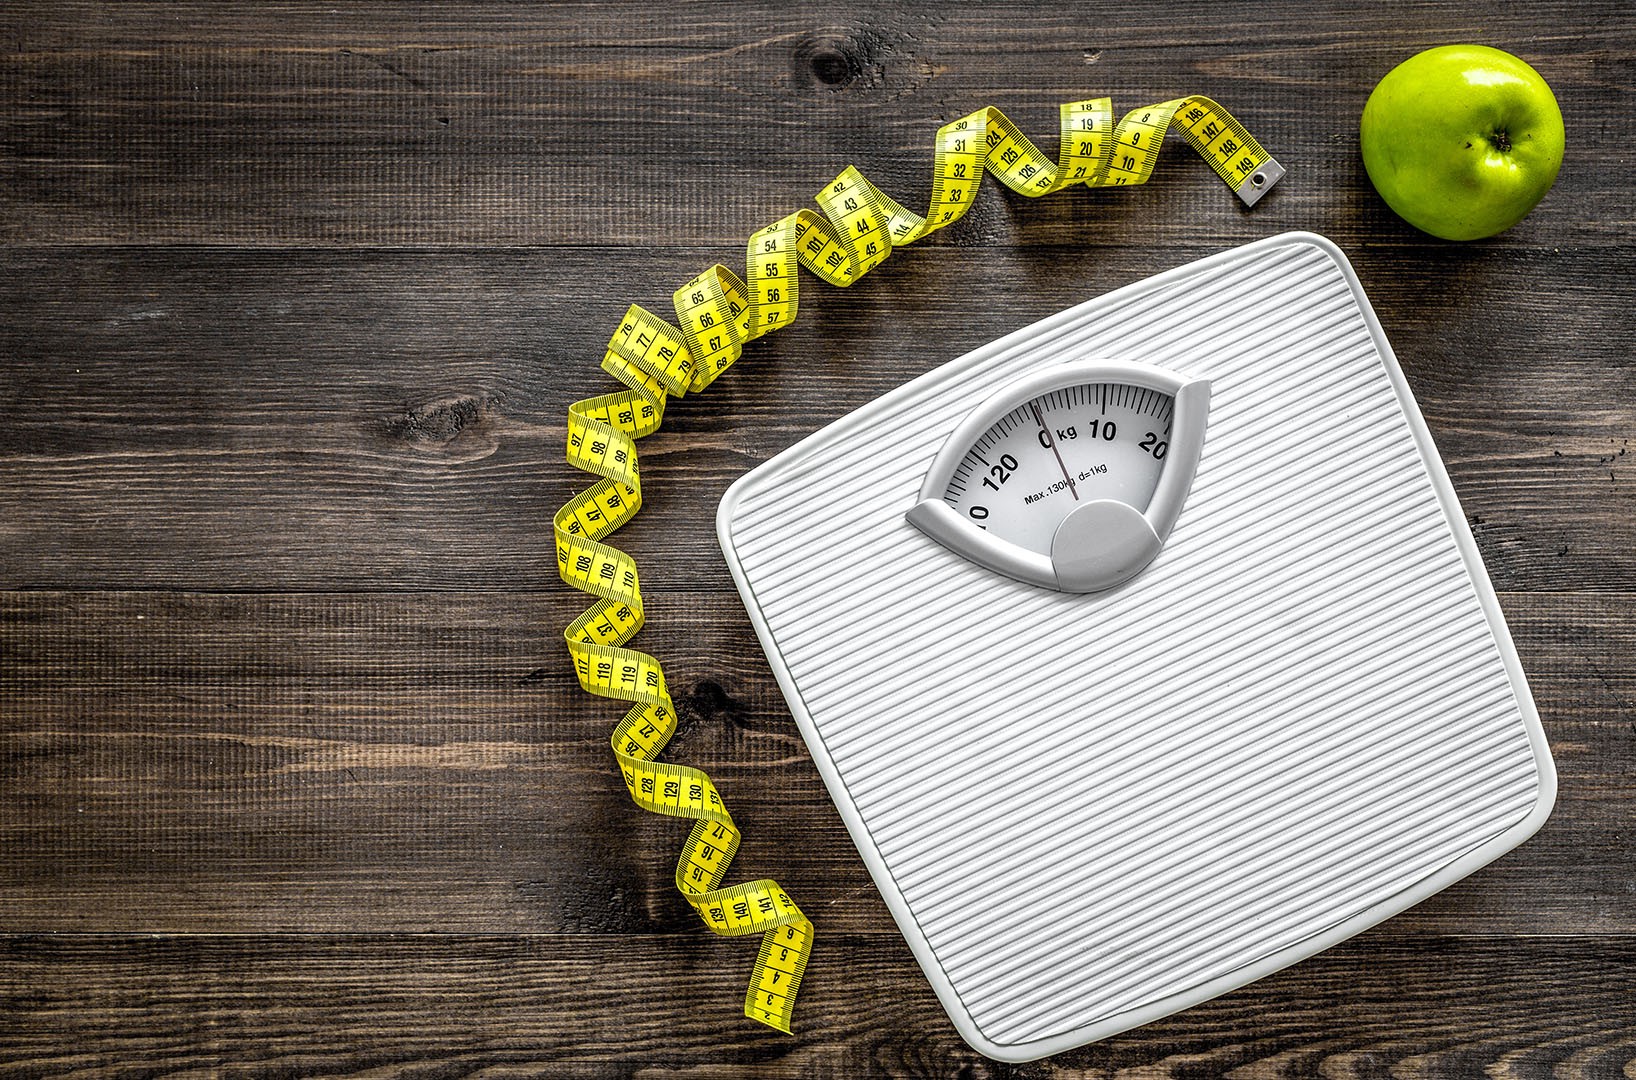 Quatro estratégias para quem quer perder peso com saúde